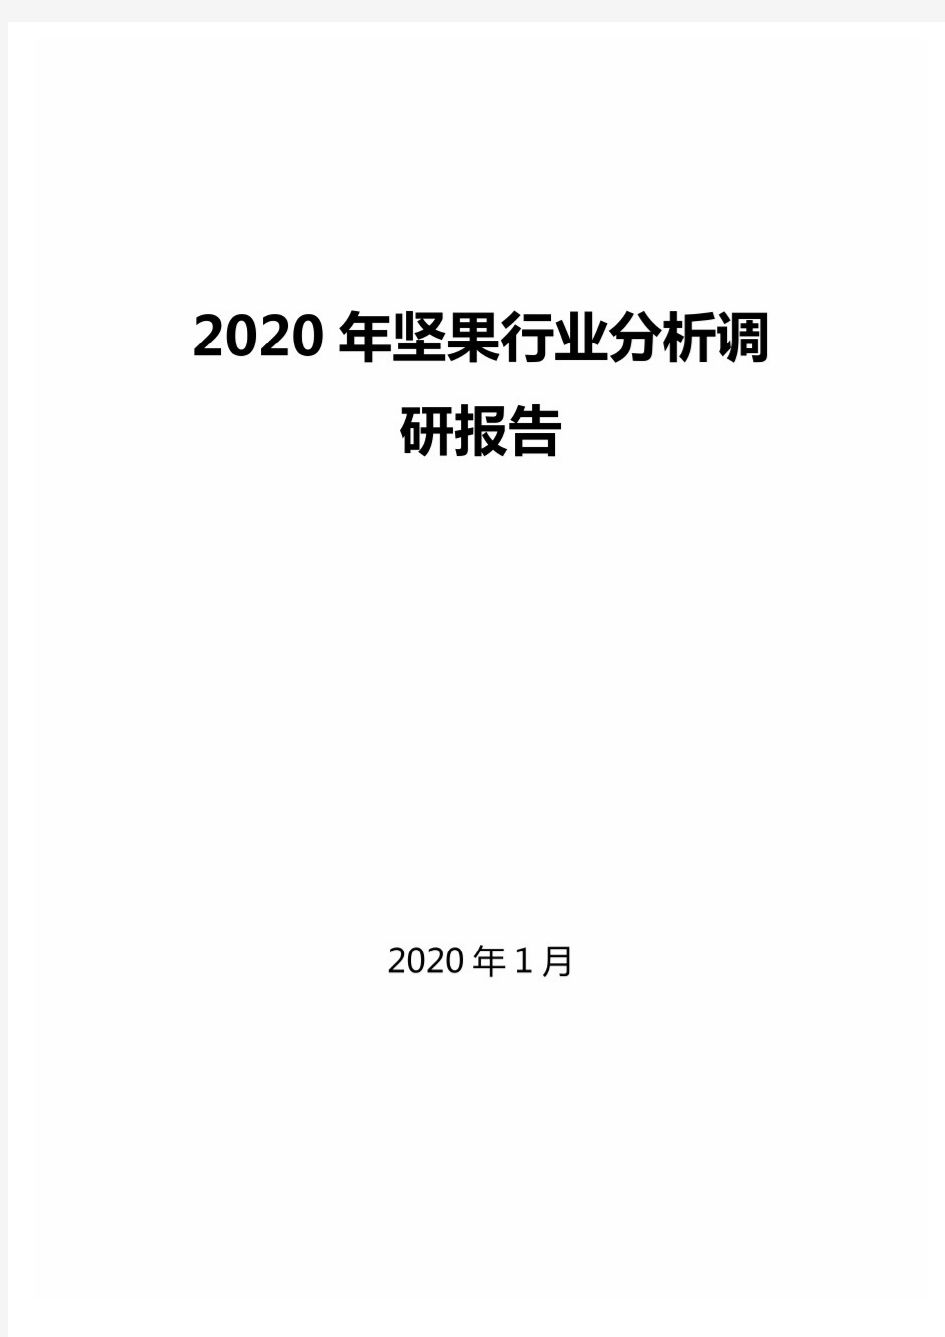 2020年坚果行业分析调研报告